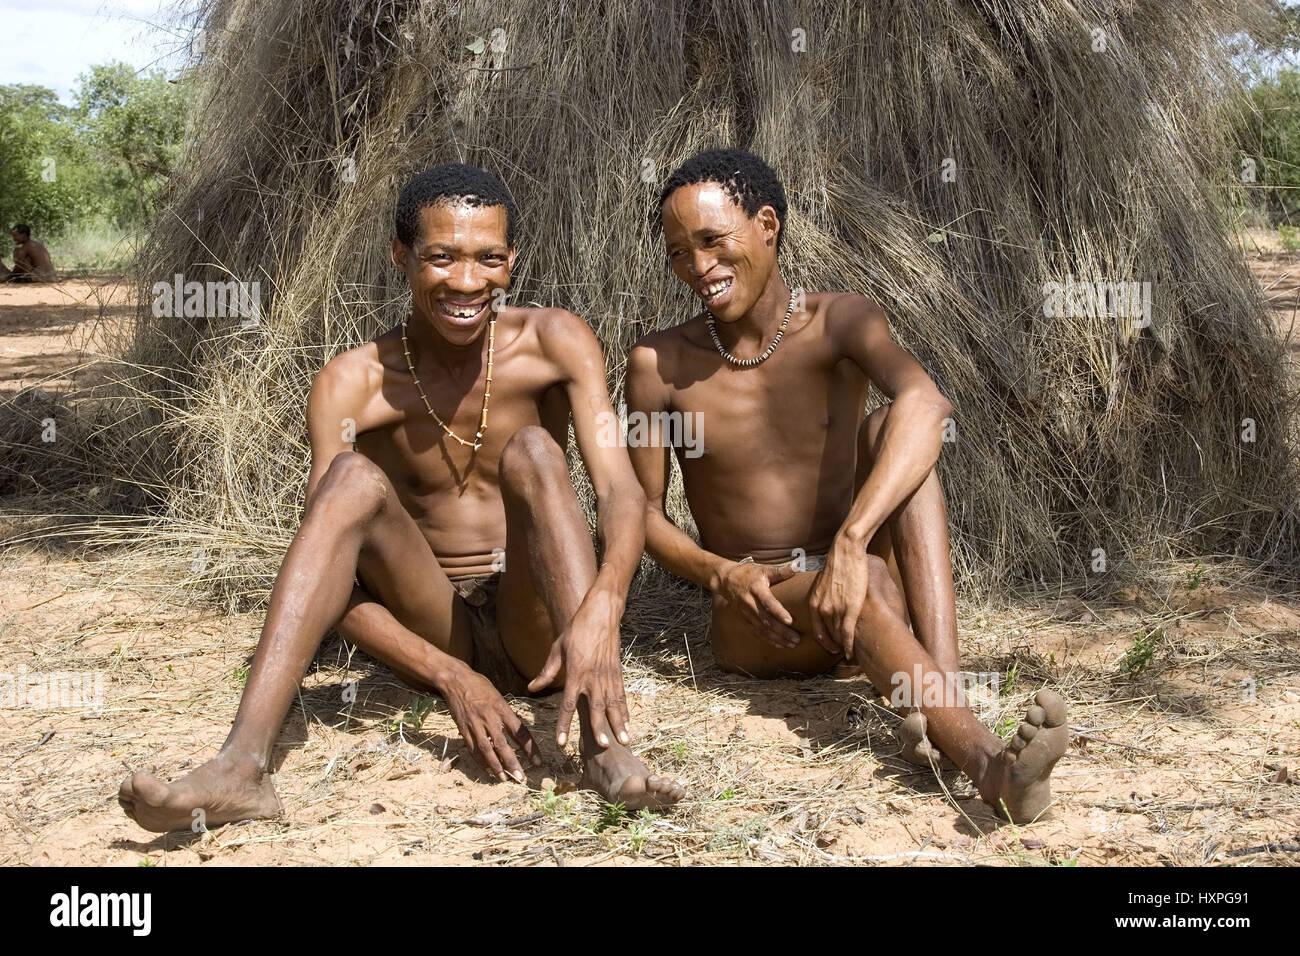 Buschmann M? Nner sitzen vor ihren Tratitionelen Rasen bedeckten Hütten. Namibia, Buschmann Männer einer Vor Ihren Tratitionelen Grasbedeckten Hütten. Namibi Stockfoto